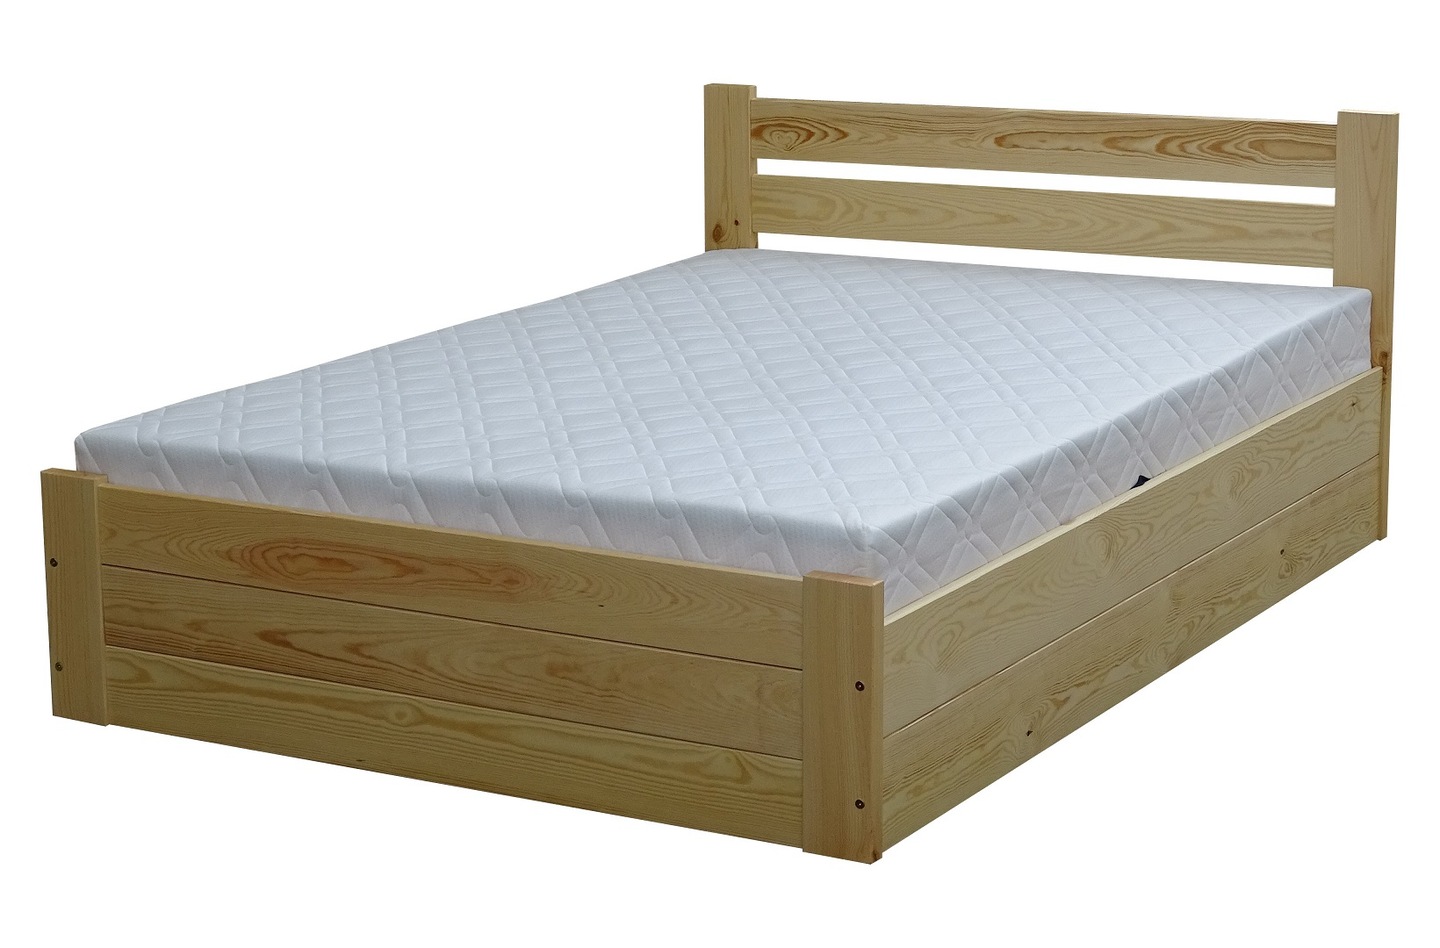 Кровать 160х200 купить спб недорого от производителя. Кровать массив дерева 160х200. Деревянная кровать с ящиками. Кровать 160х200 из дерева. Кровать из массива с ящиками.